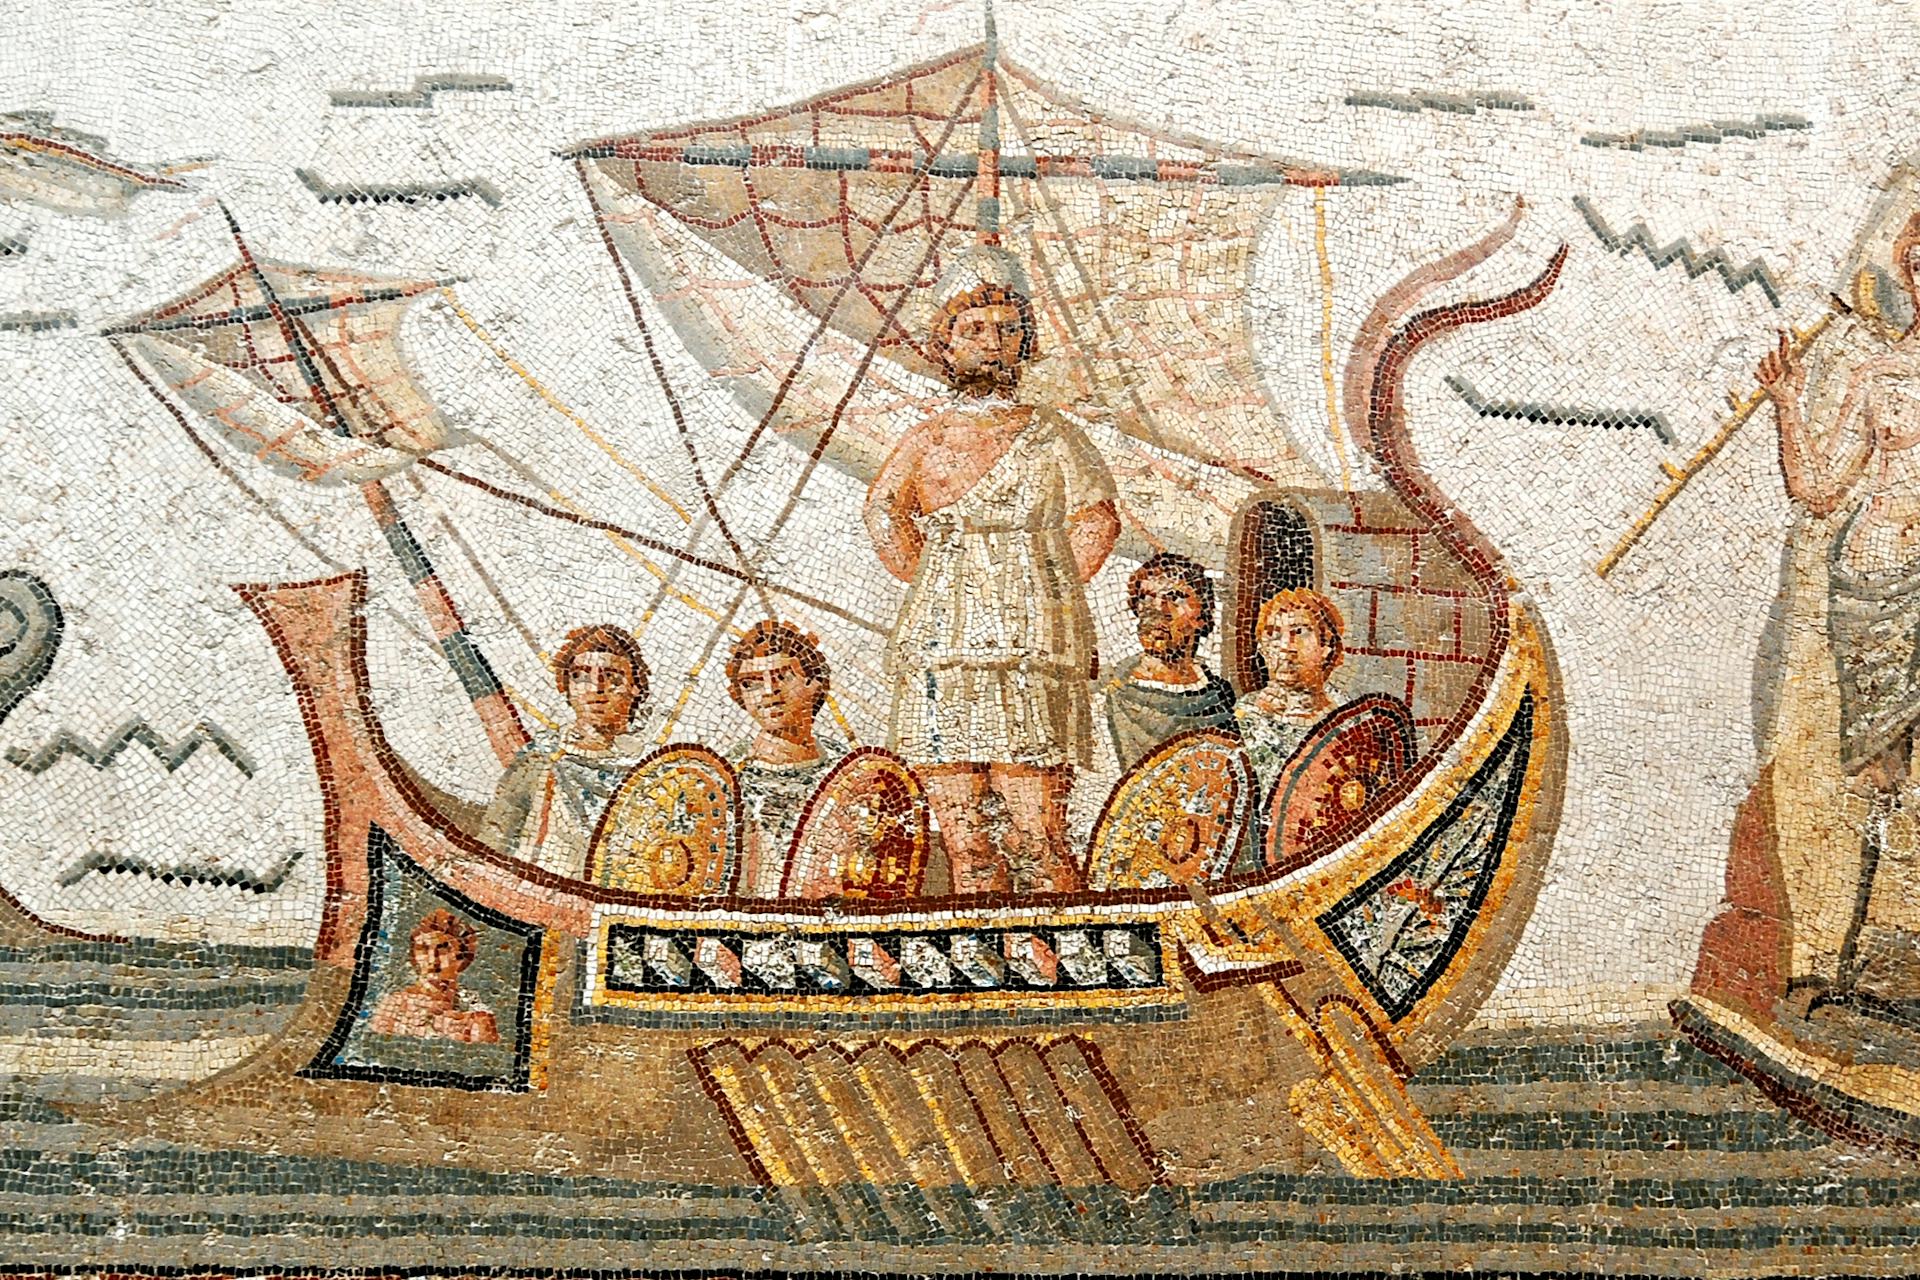 Odysseus, Greek Hero (3x2)